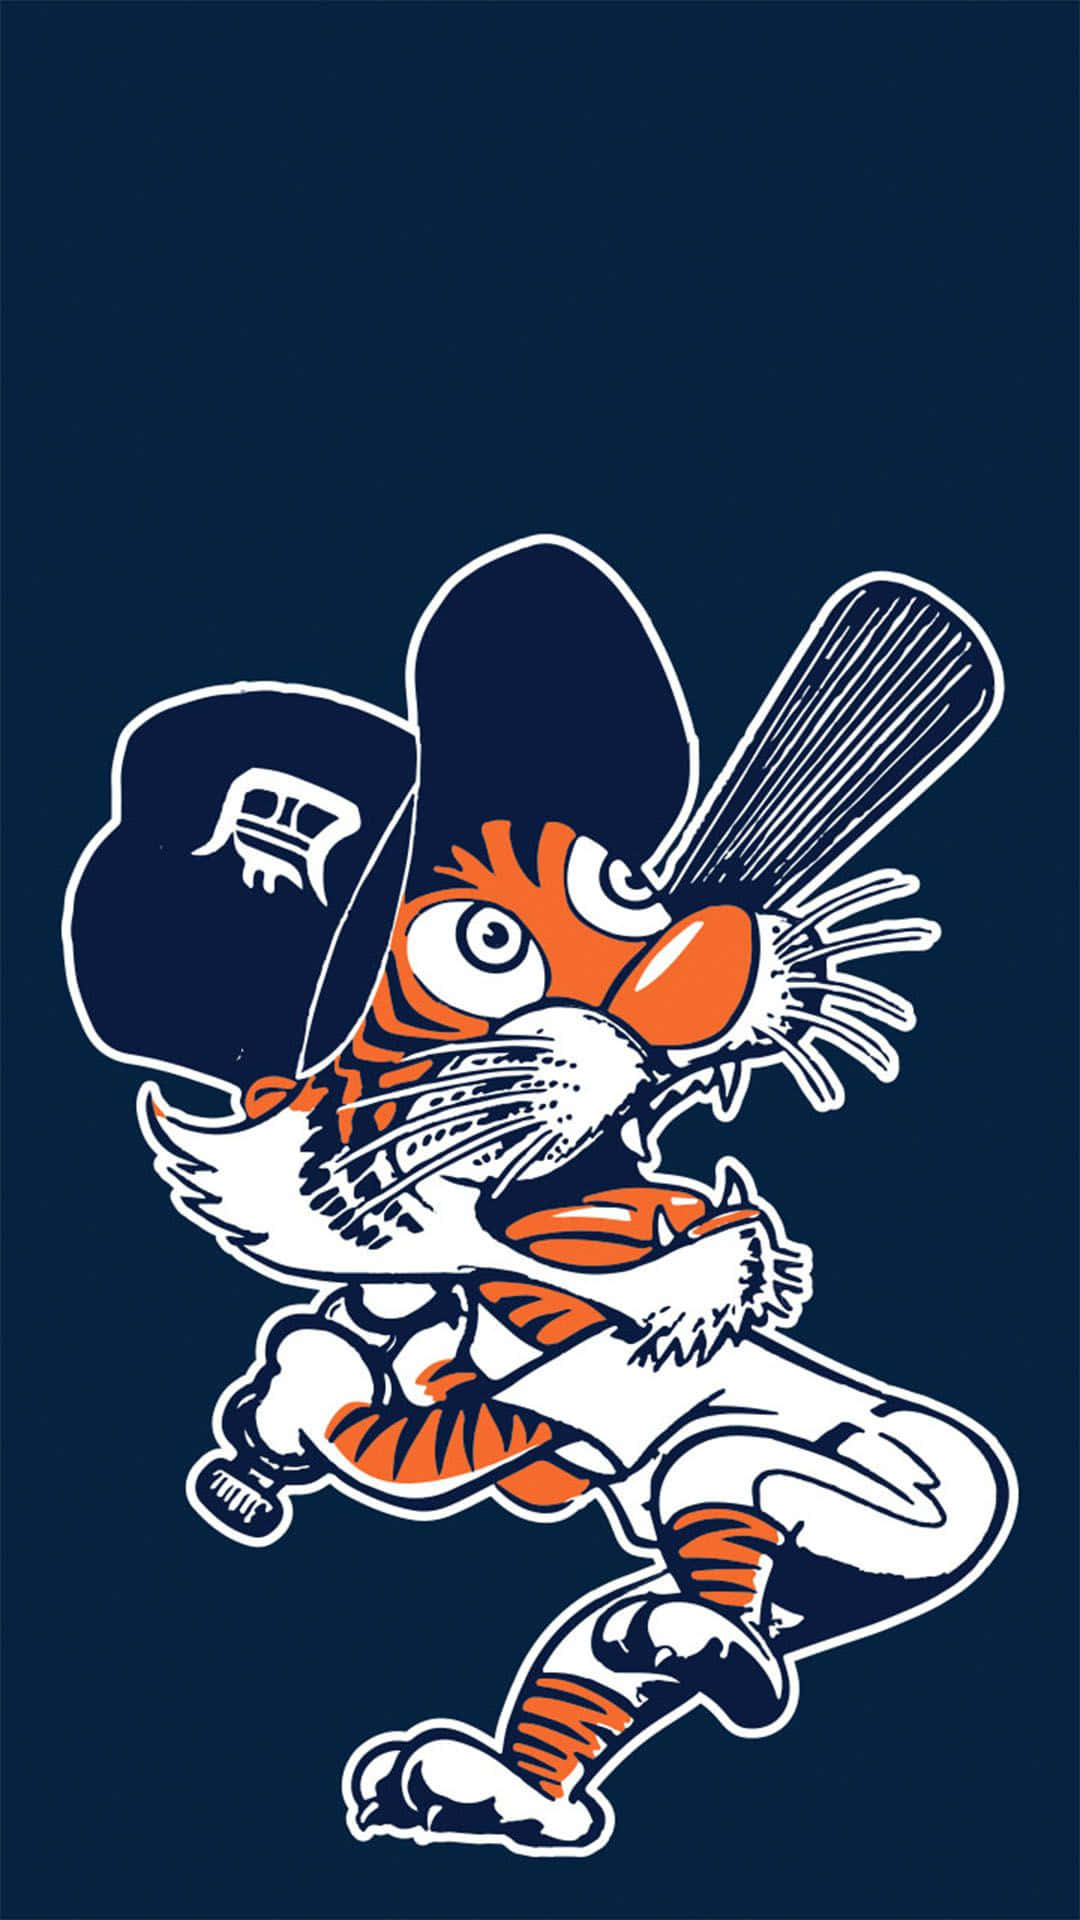 Poter med et Detroit Tigers-logo Wallpaper